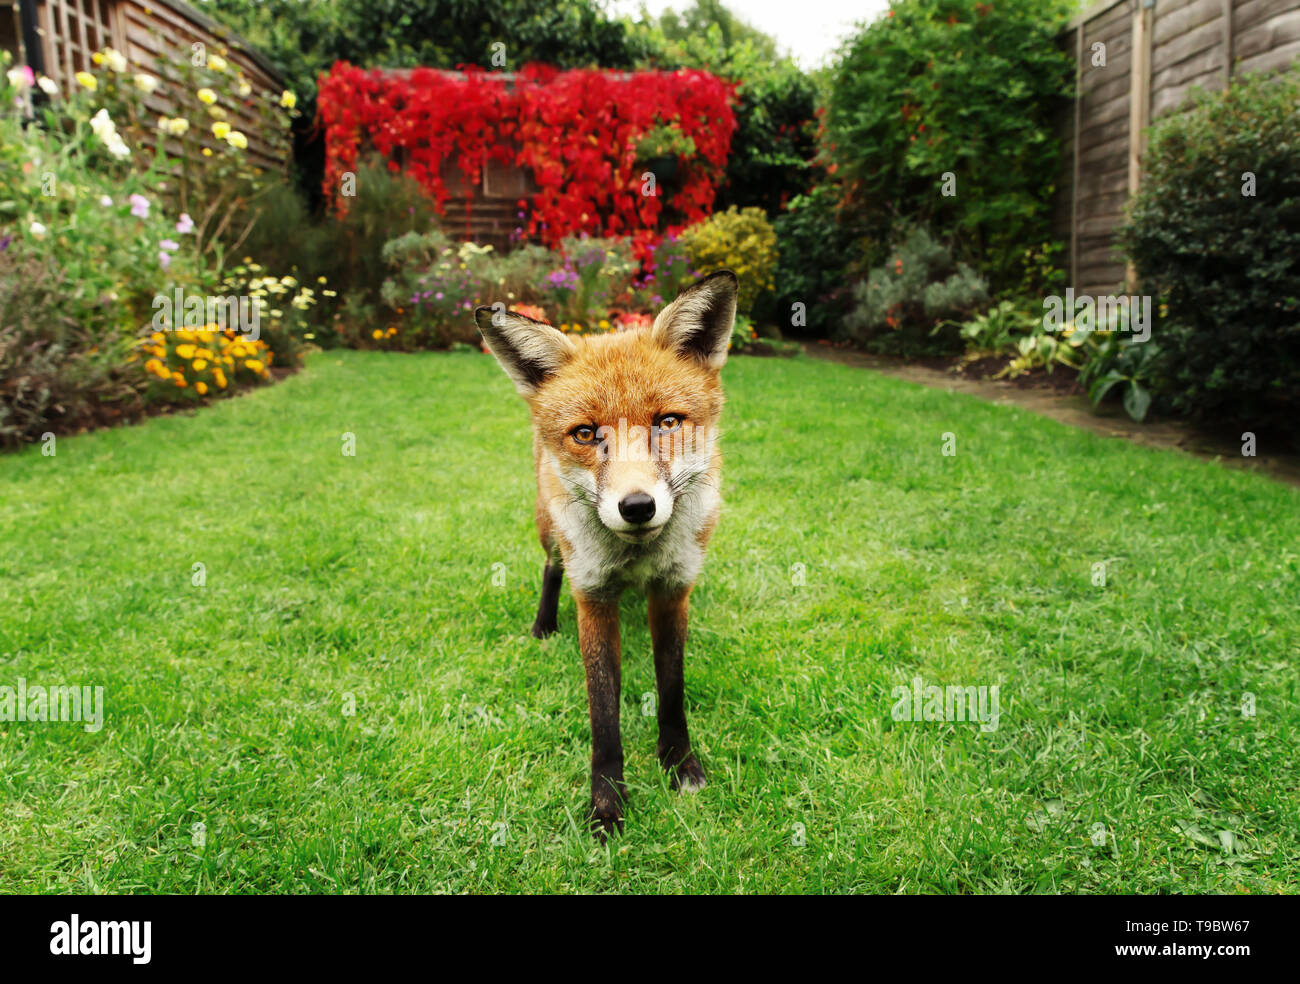 In prossimità di una volpe rossa in giardino con fiori, UK. Foto Stock